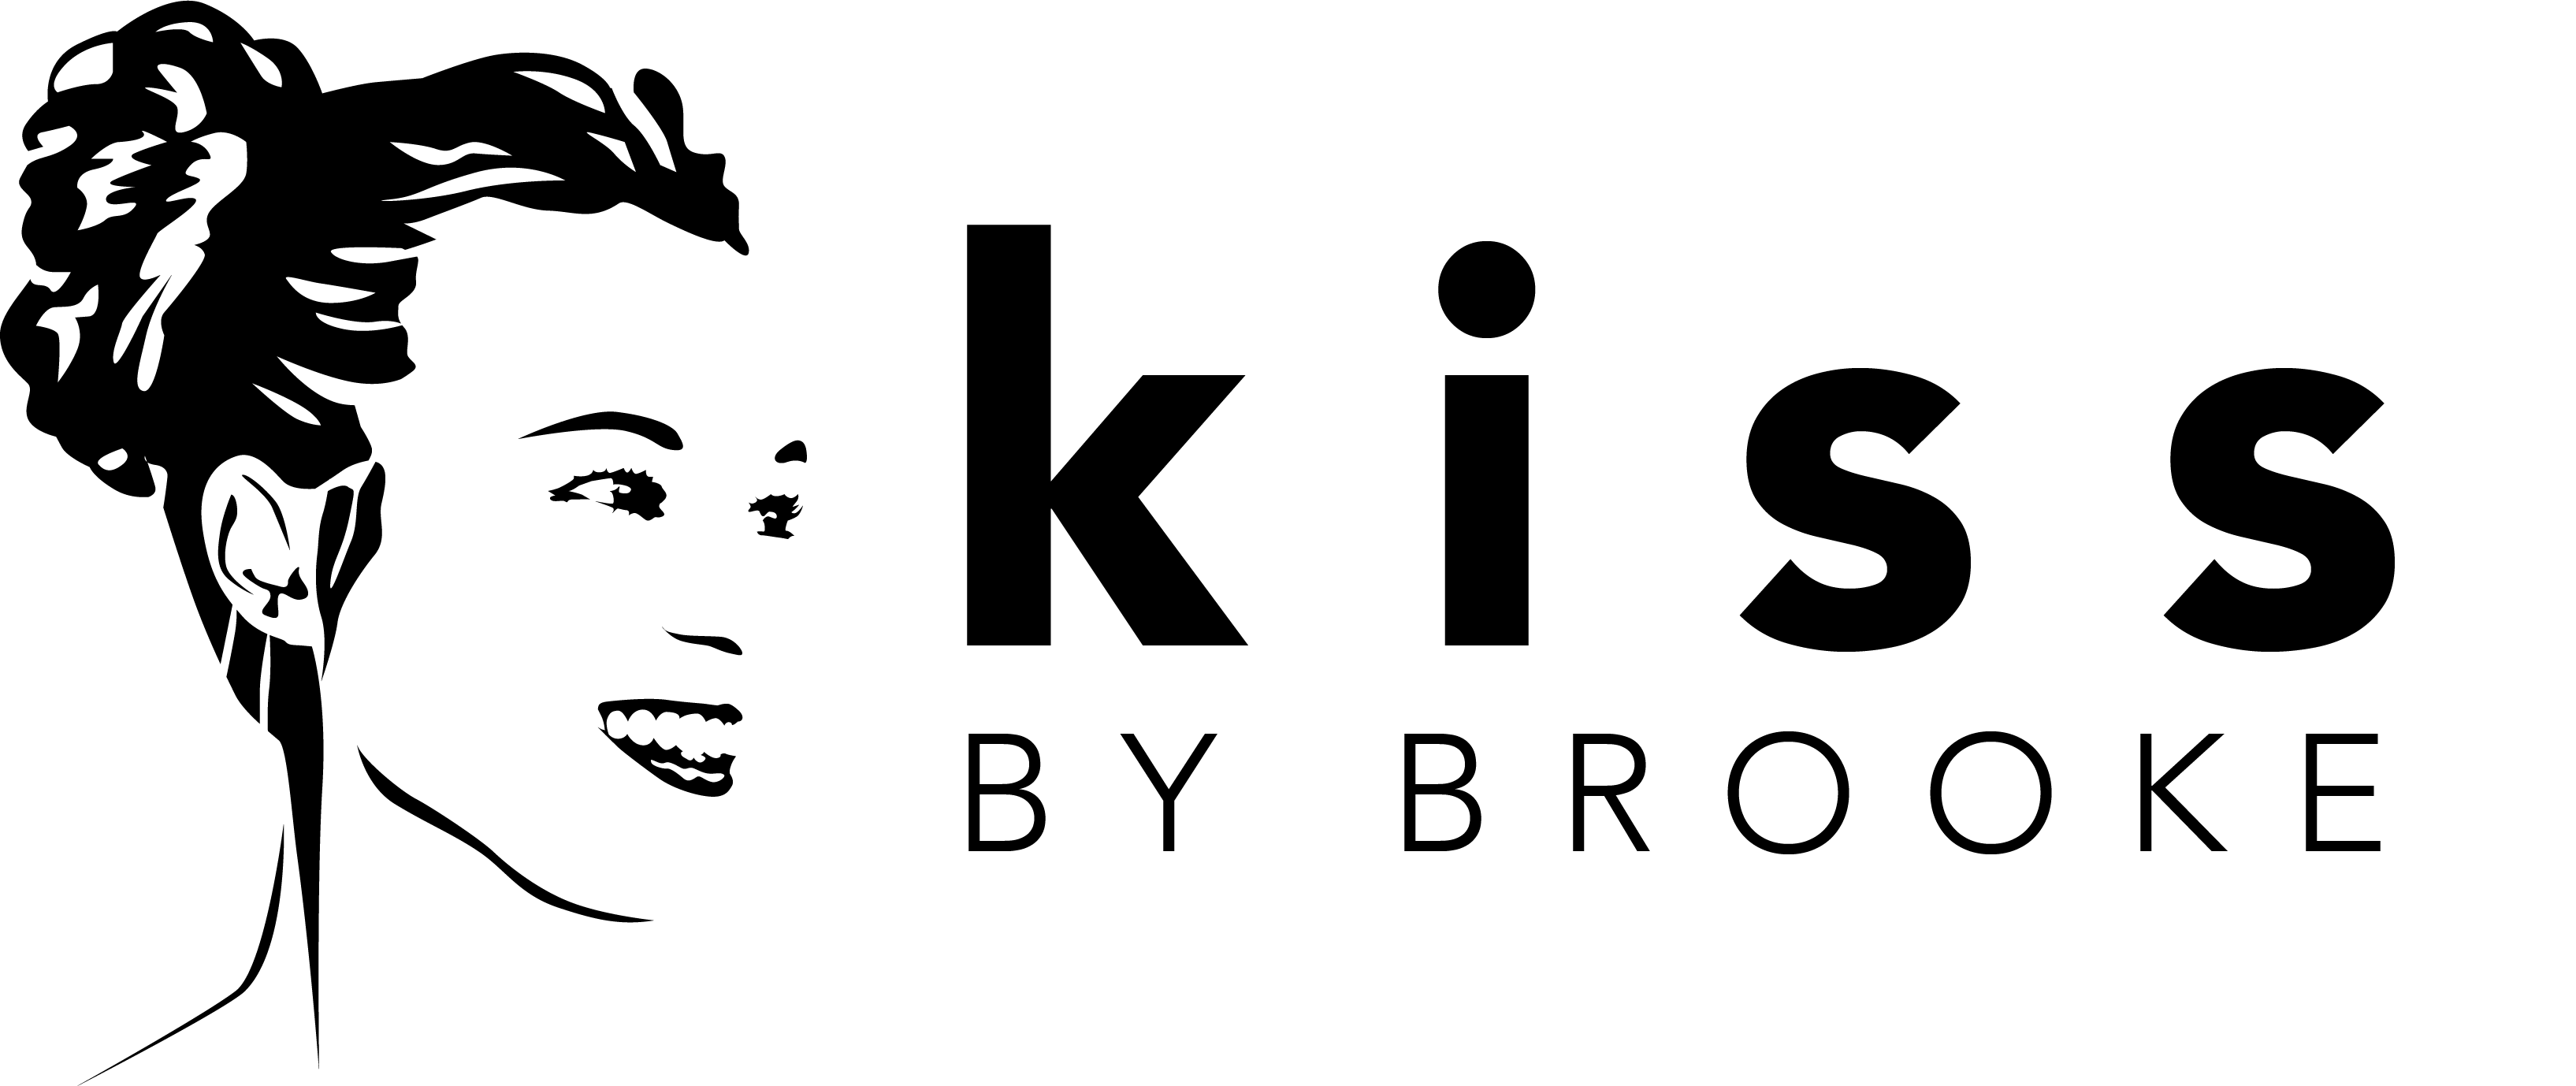 KBB Logo - Kbb Logo 1 062317